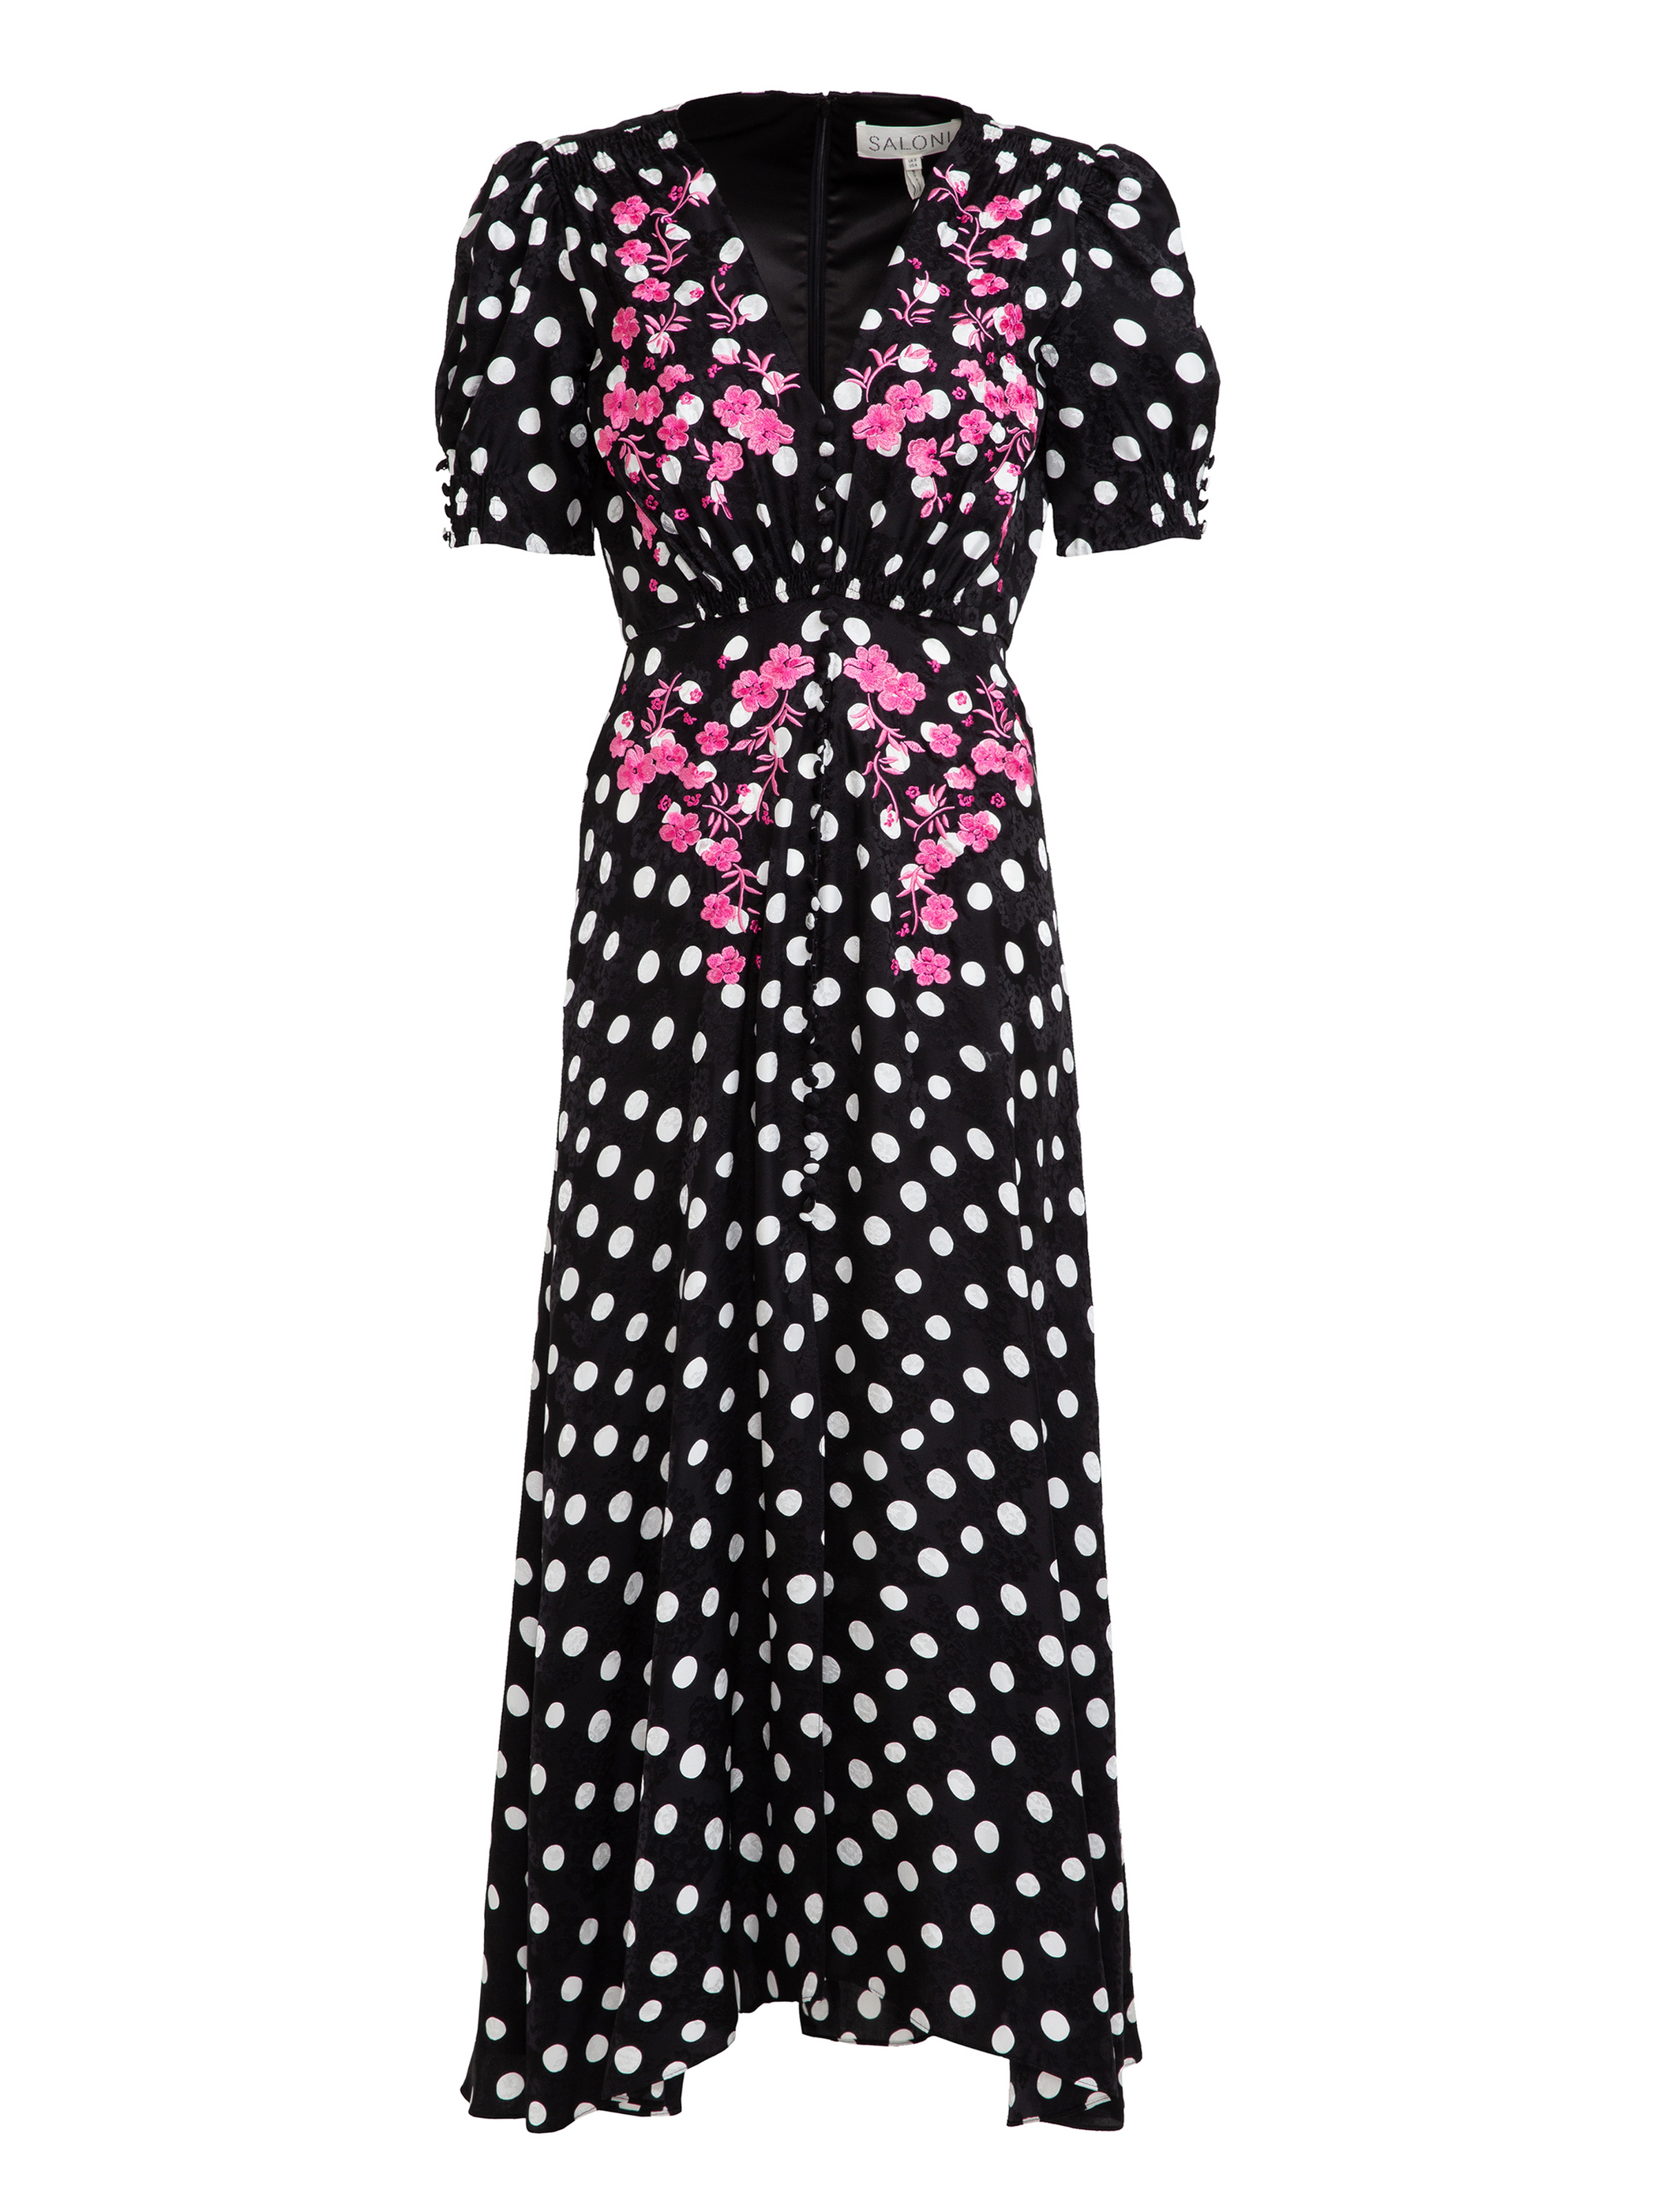 Lea Long Dress in Polka Dot Flower Embroidery